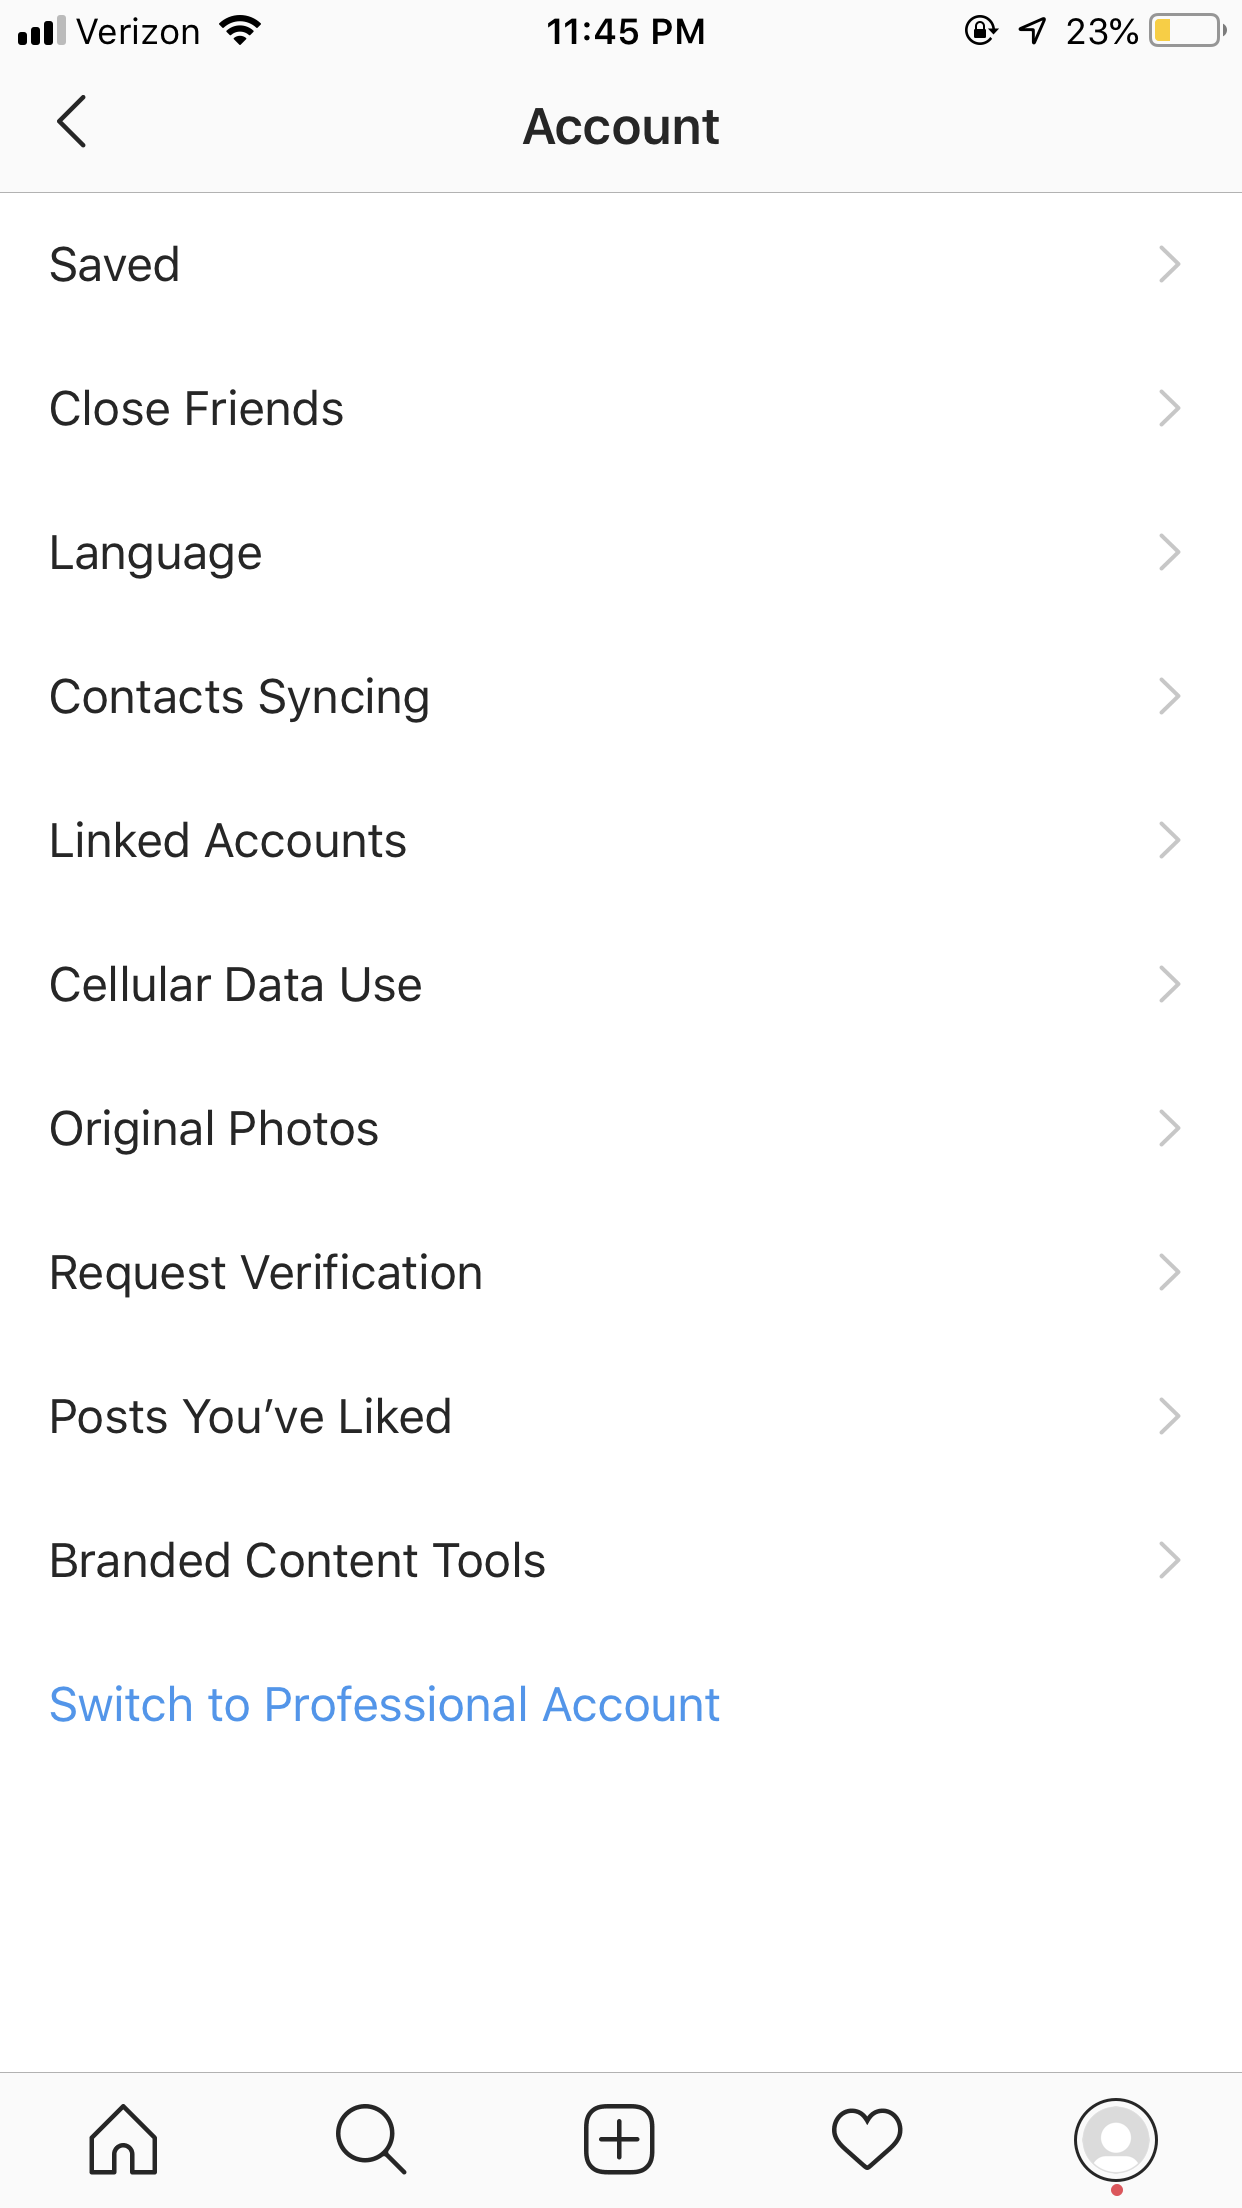 perfil empresarial de instagram: la configuración de su cuenta